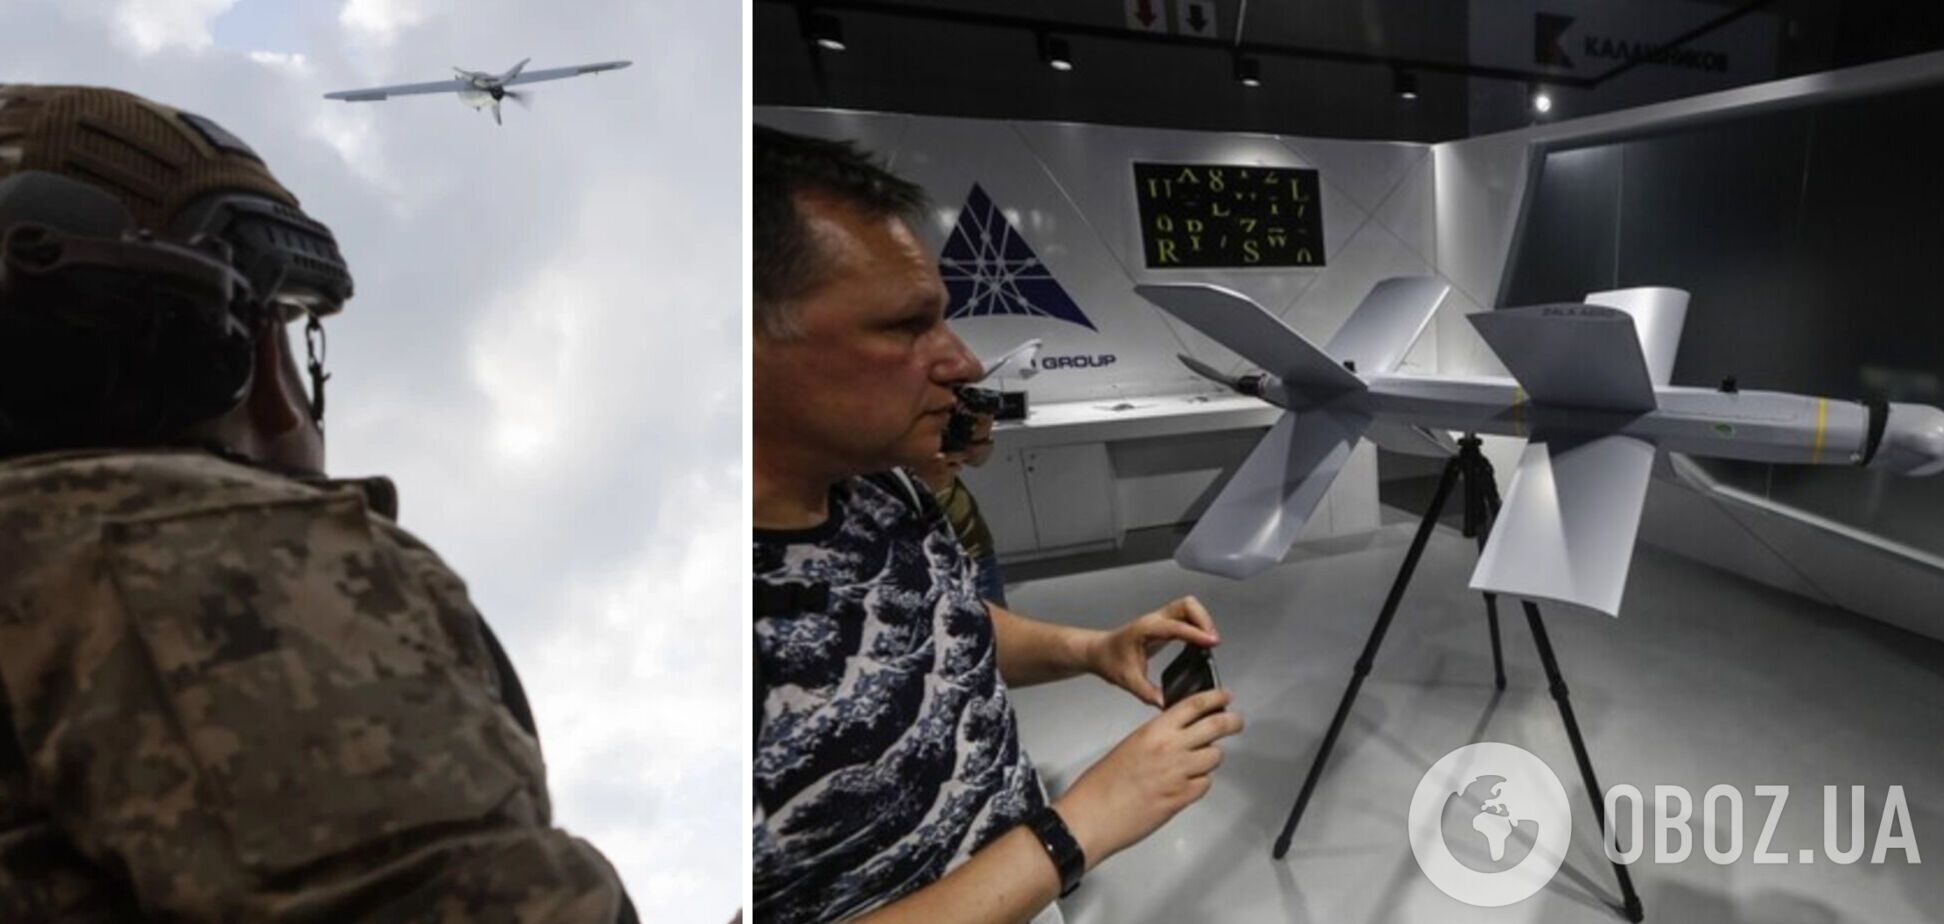 Збільшиться дистанція ураження: українські аналоги дронів 'Ланцет' пройшли перші випробування 